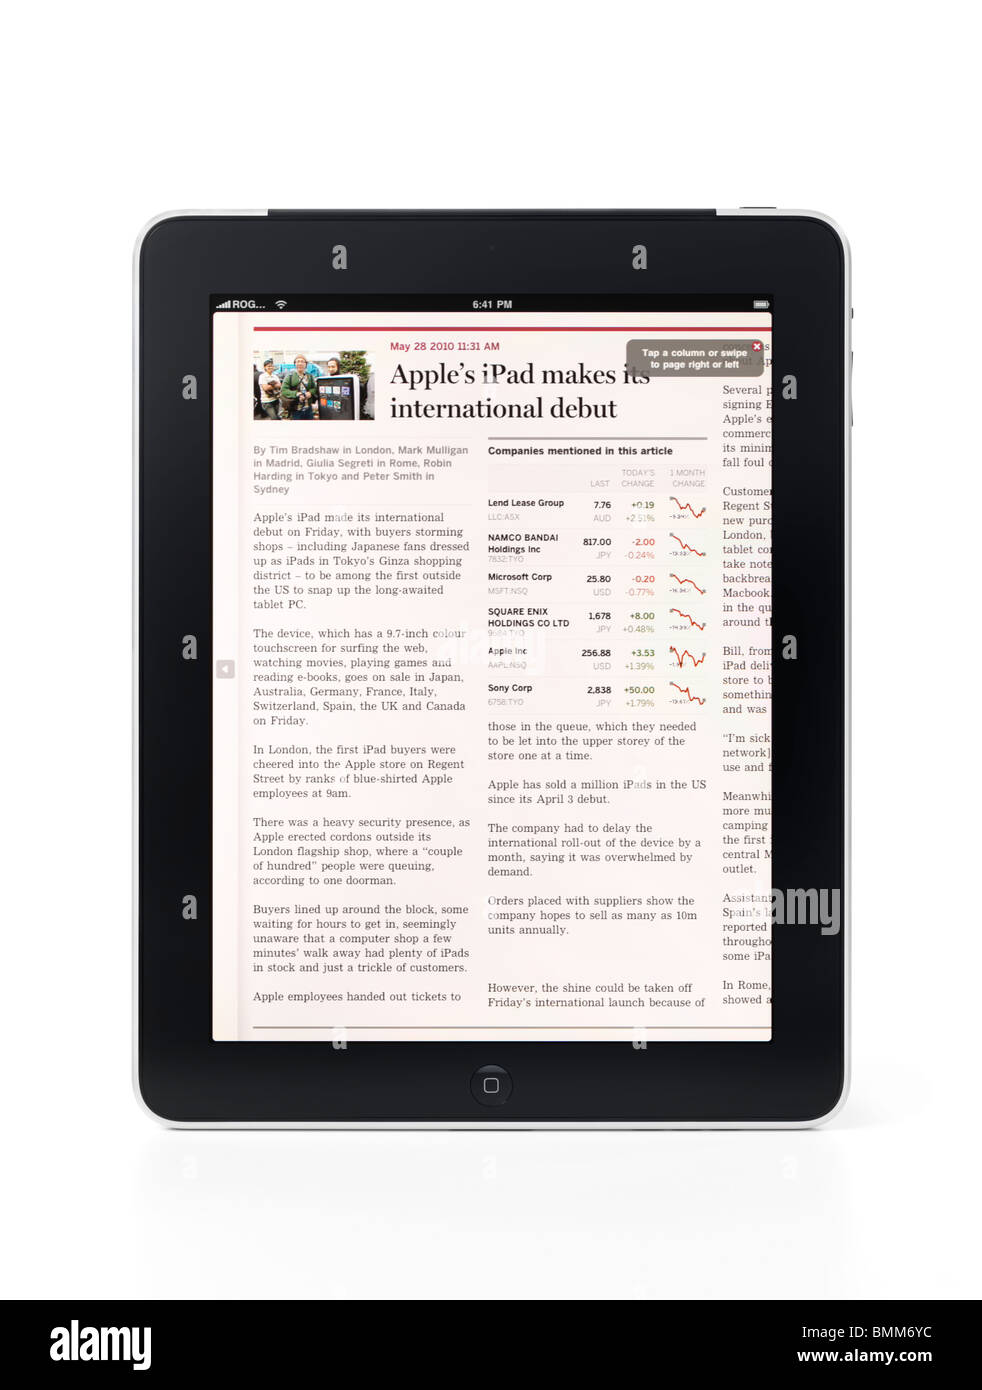 Apple iPad 3G tablet computer afficher un article sur ses débuts internationaux isolé sur fond blanc Banque D'Images